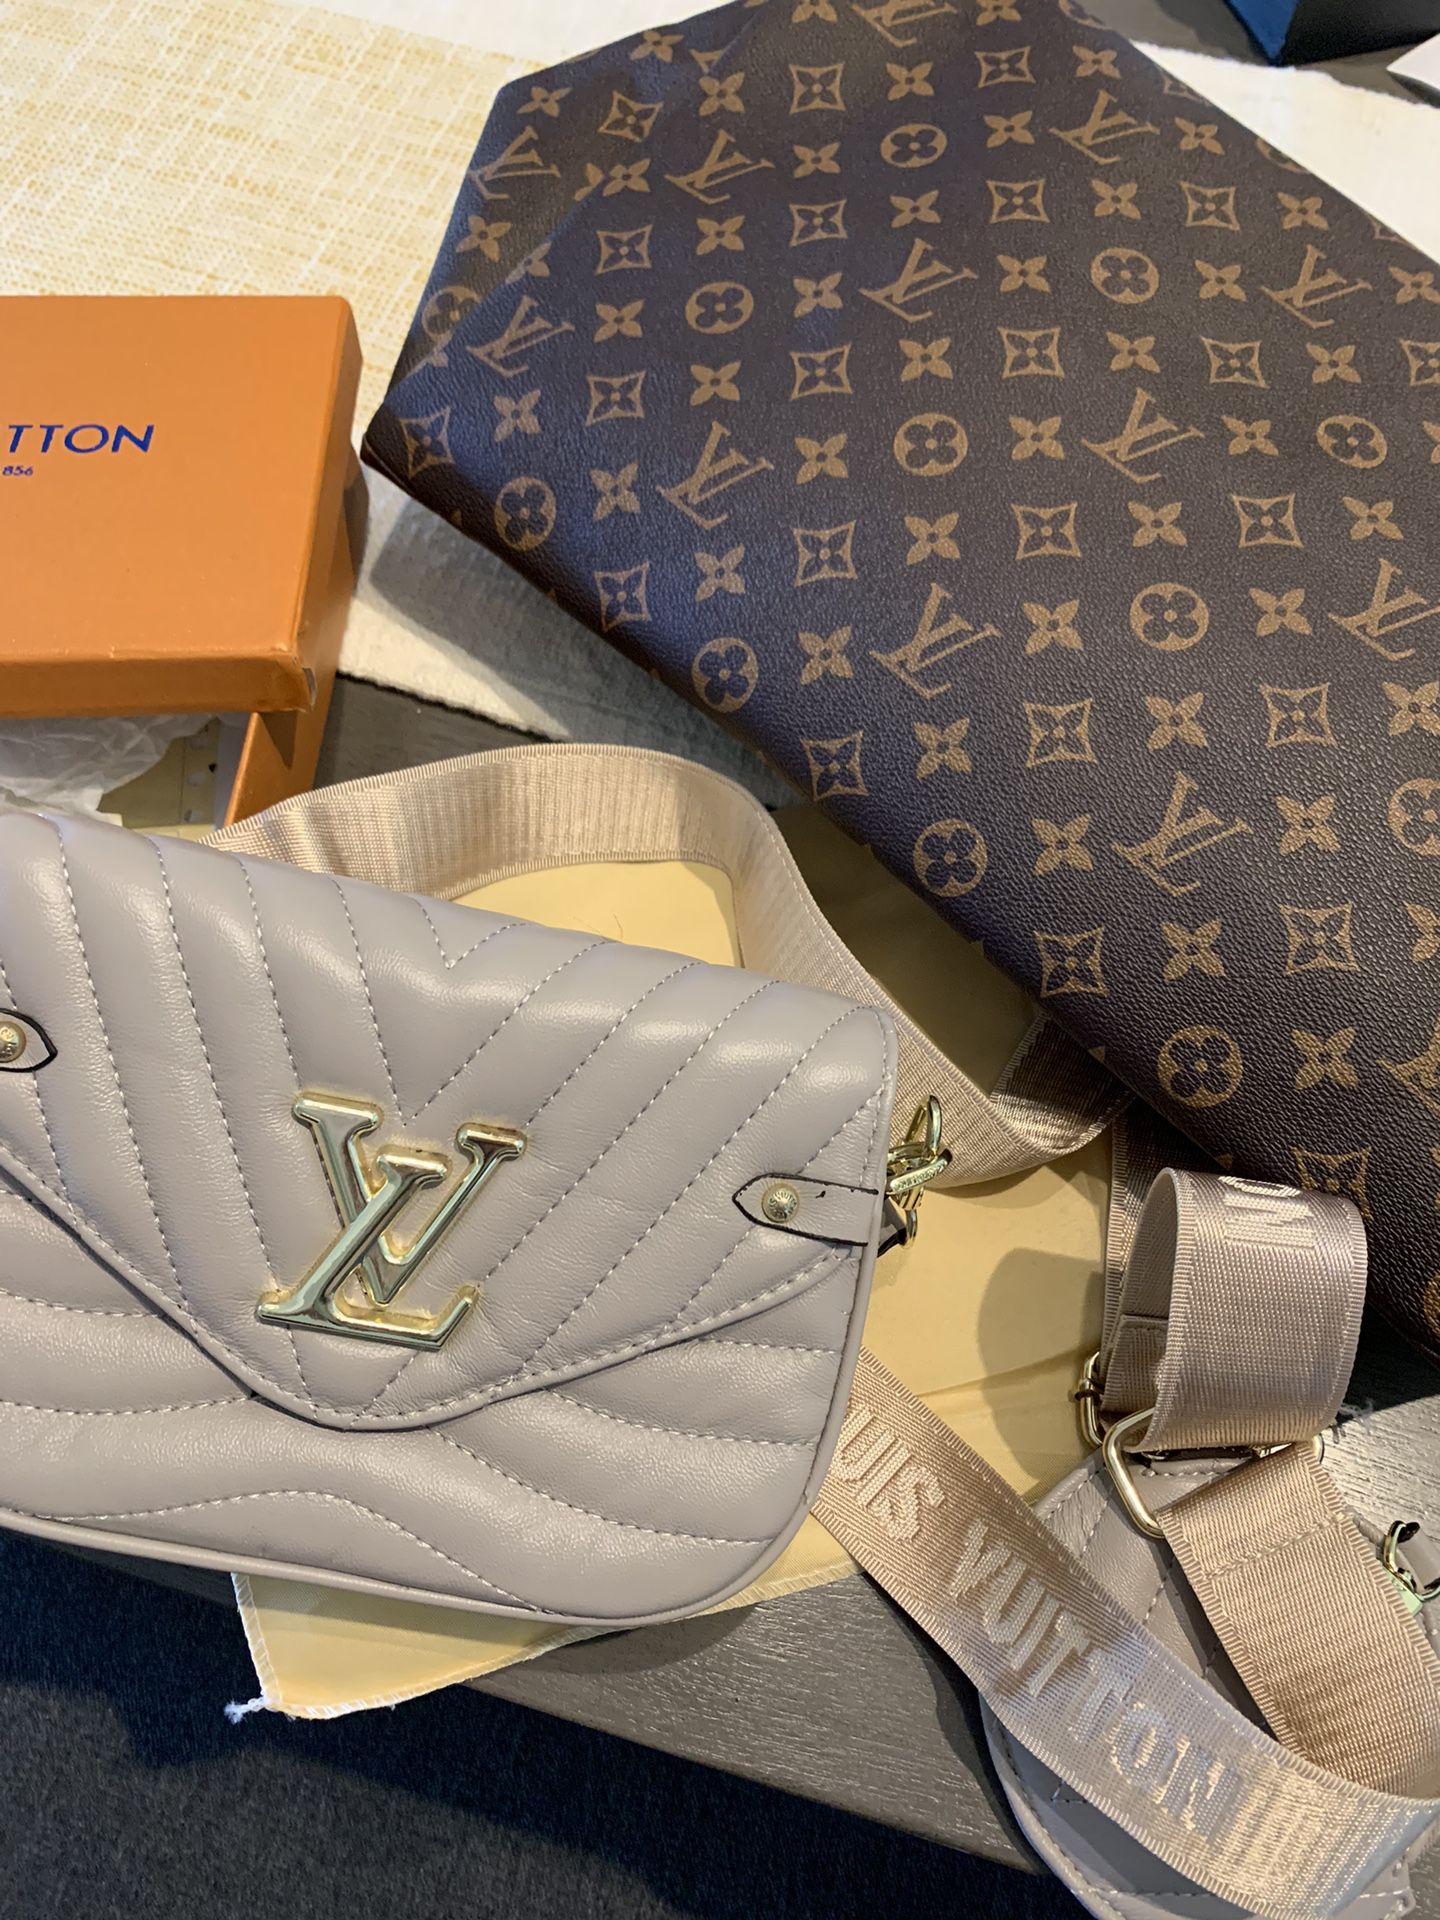 Louis Vuitton Luggage for Sale in Miramar, FL - OfferUp